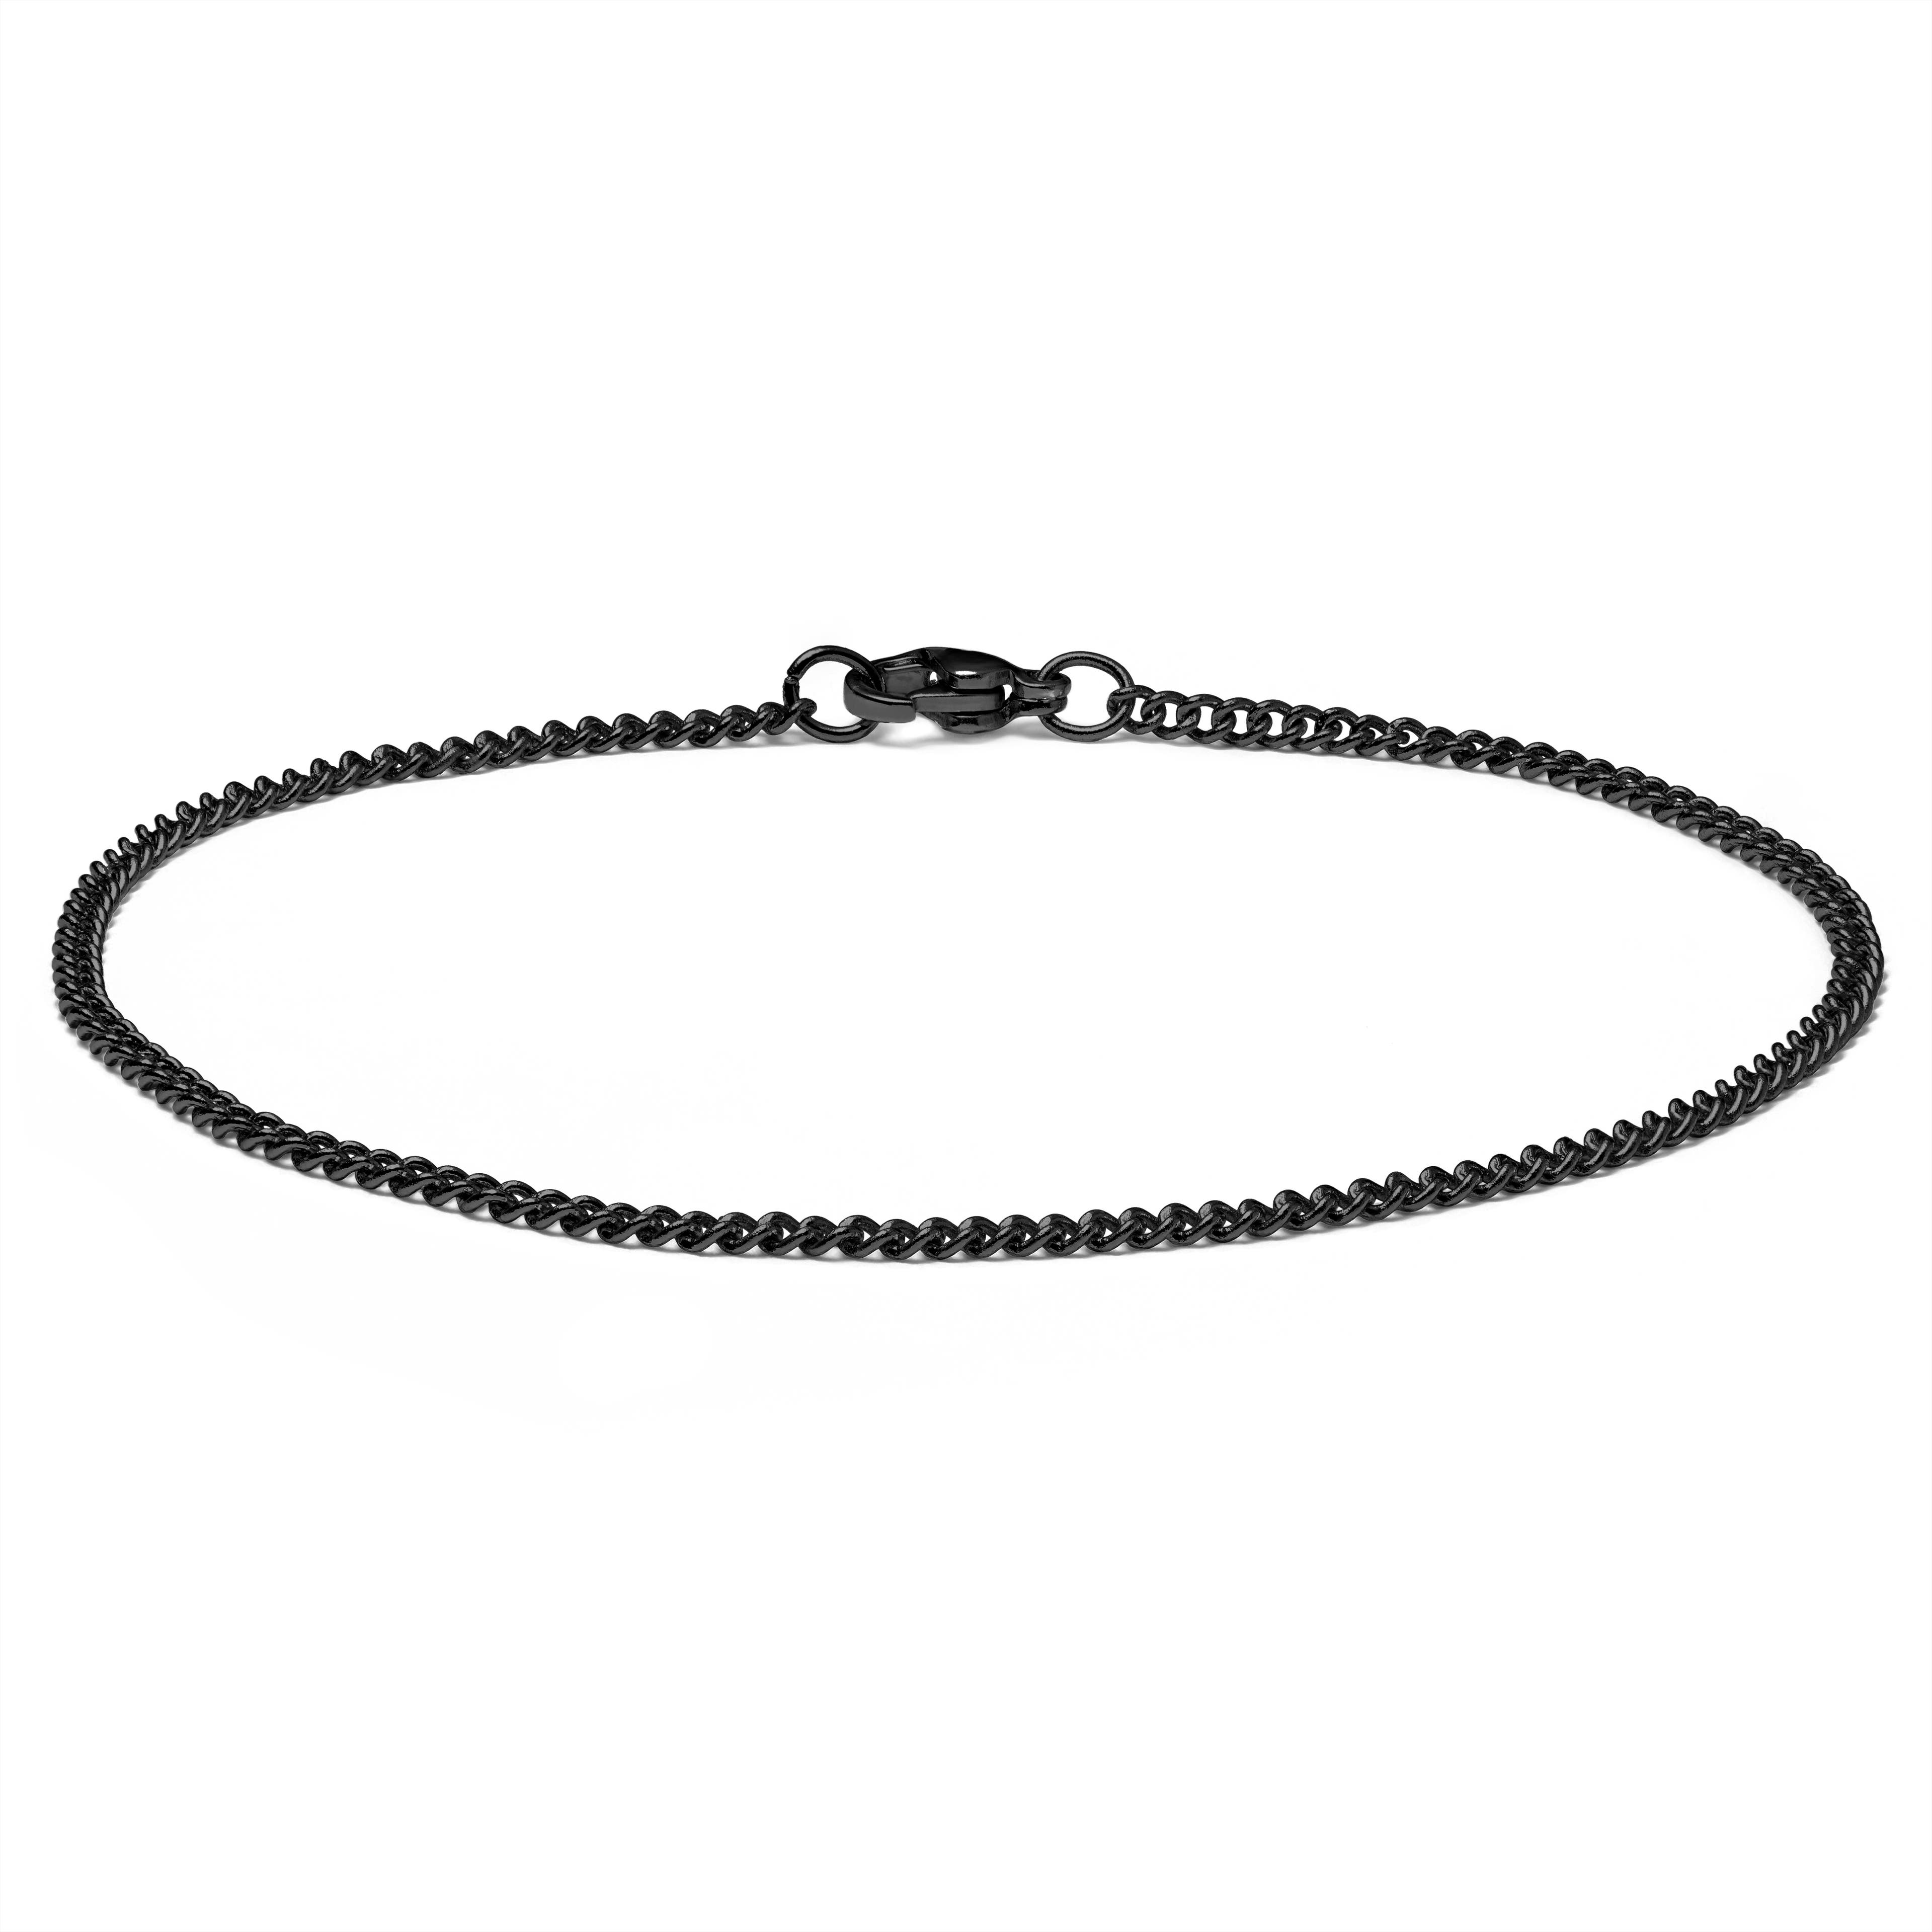 2 mm Black Chain Bracelet